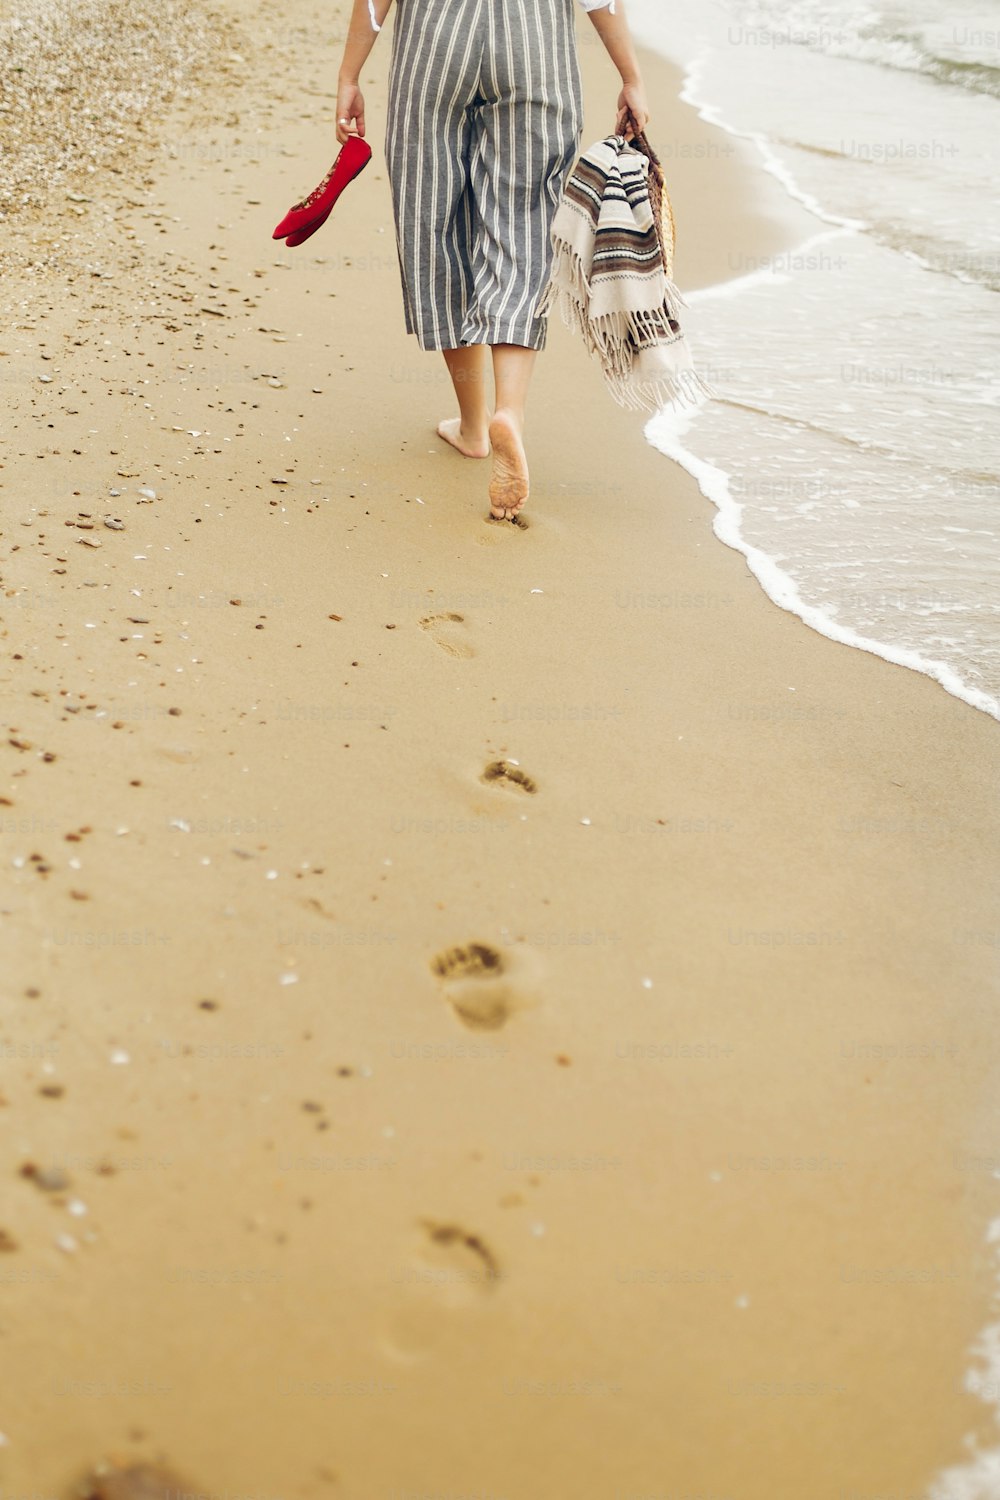 Mujer caminando descalza en la playa, vista trasera de las piernas. Joven relajándose en la playa de arena, caminando con zapatos y bolsa en las manos. Concepto de vacaciones de verano